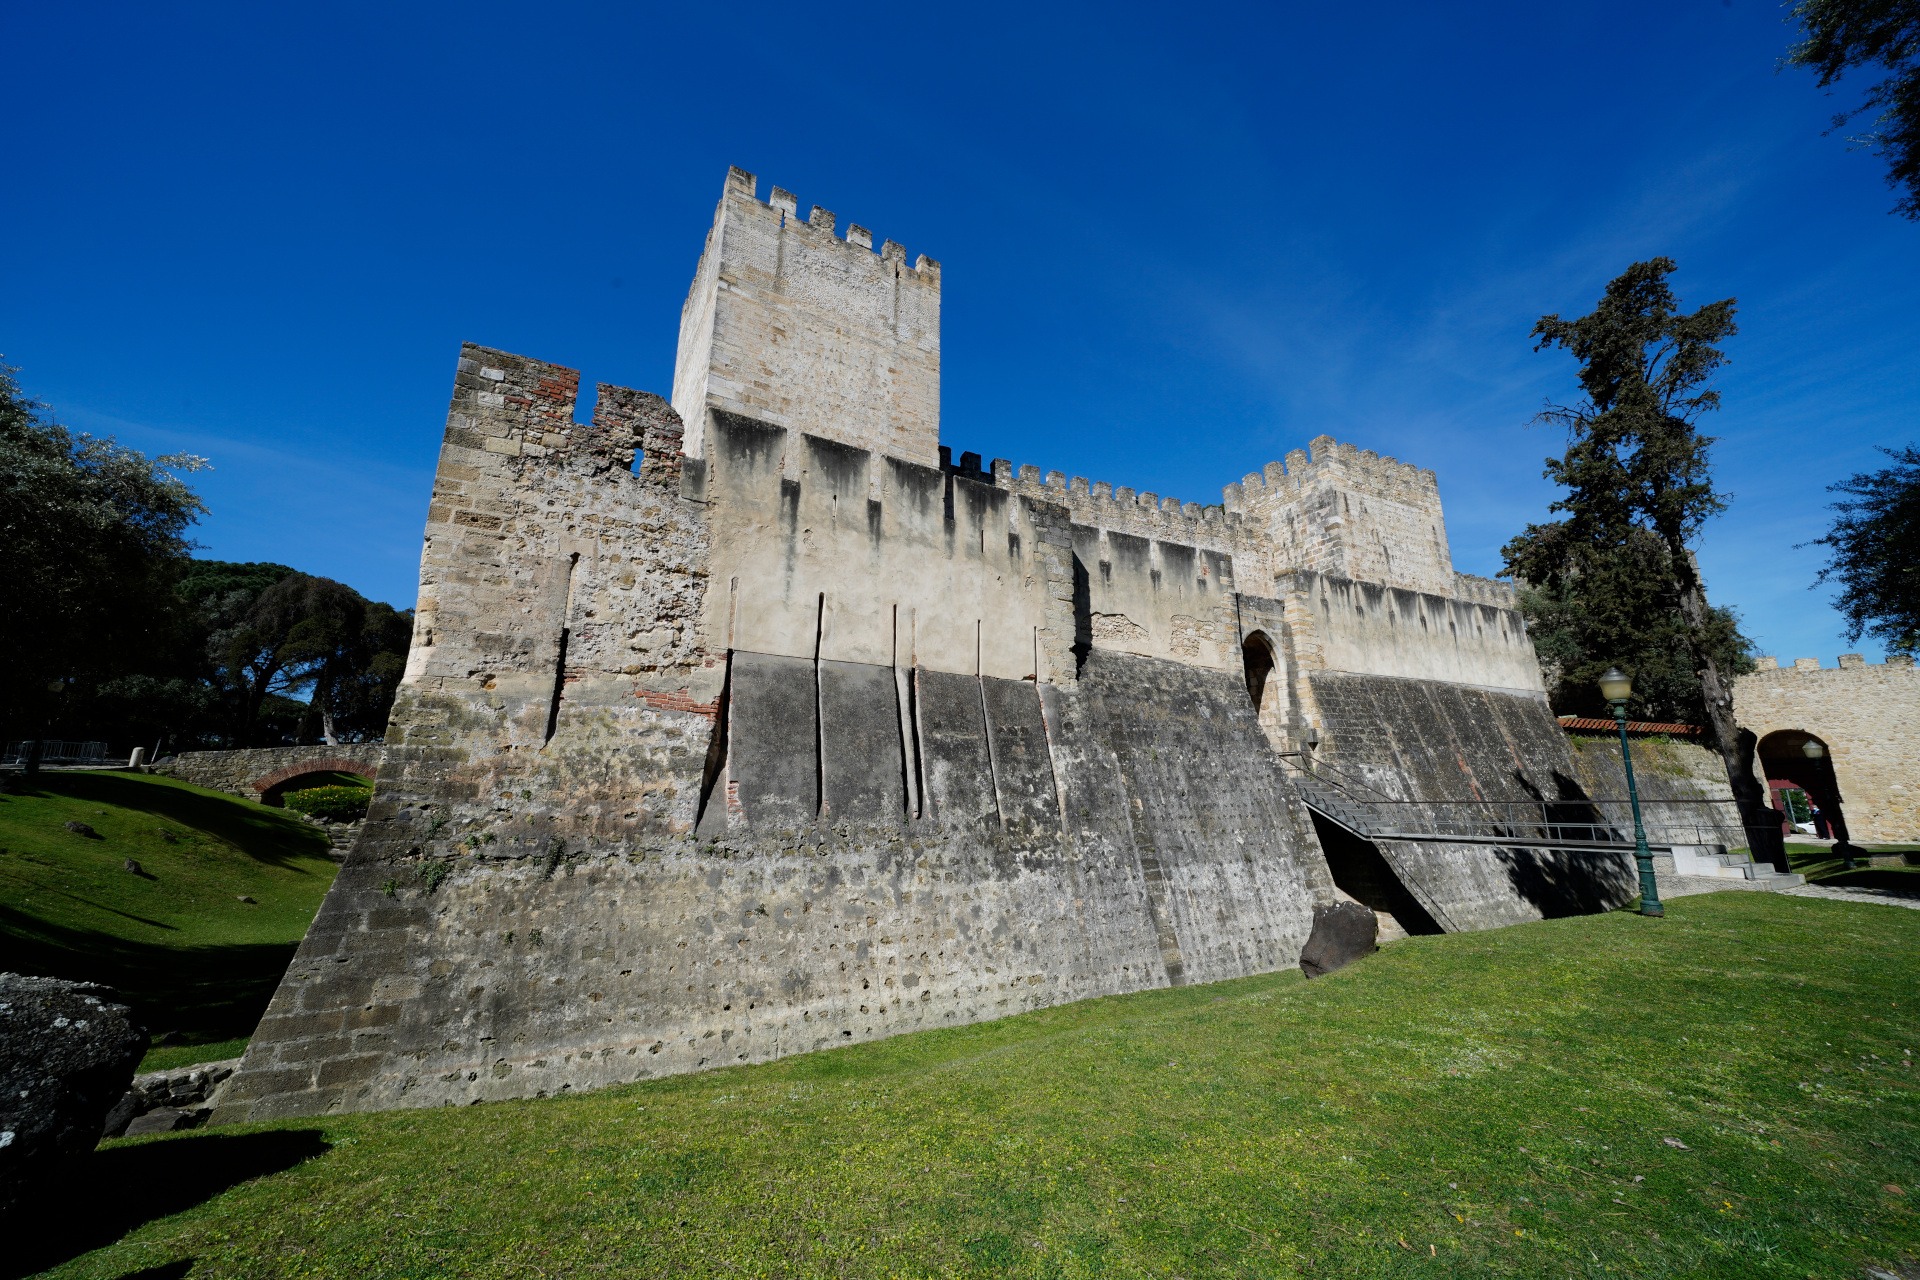 Descrição da imagem: fotografia da fachada do Castelo em que vemos a Torre de Menagem à esquerda, a entrada principal ao meio, e a Torre da Cisterna à direita.